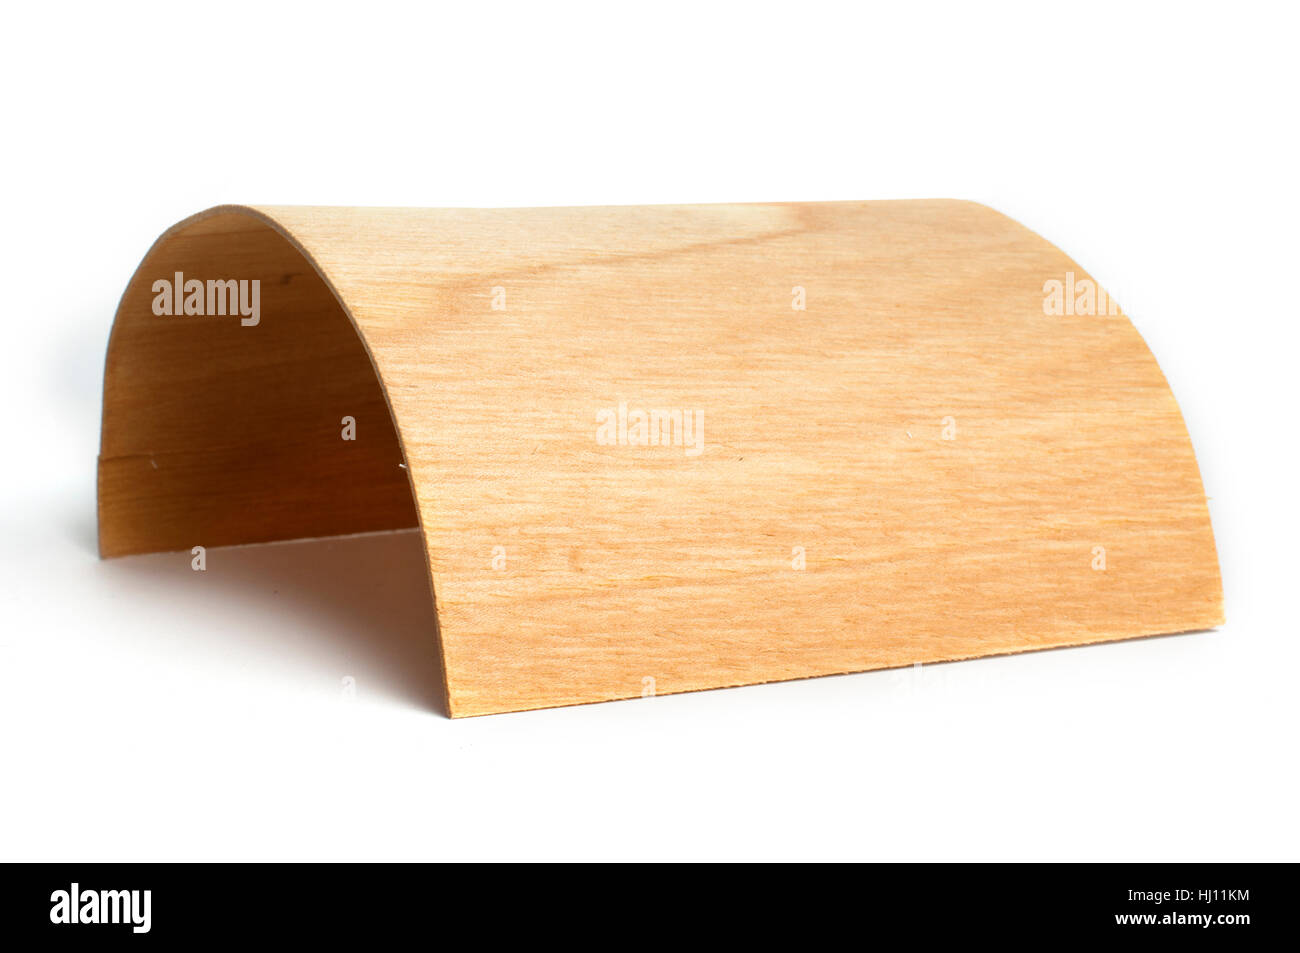 Escritorio oficina de madera y Solid Surface® modelo Bridge